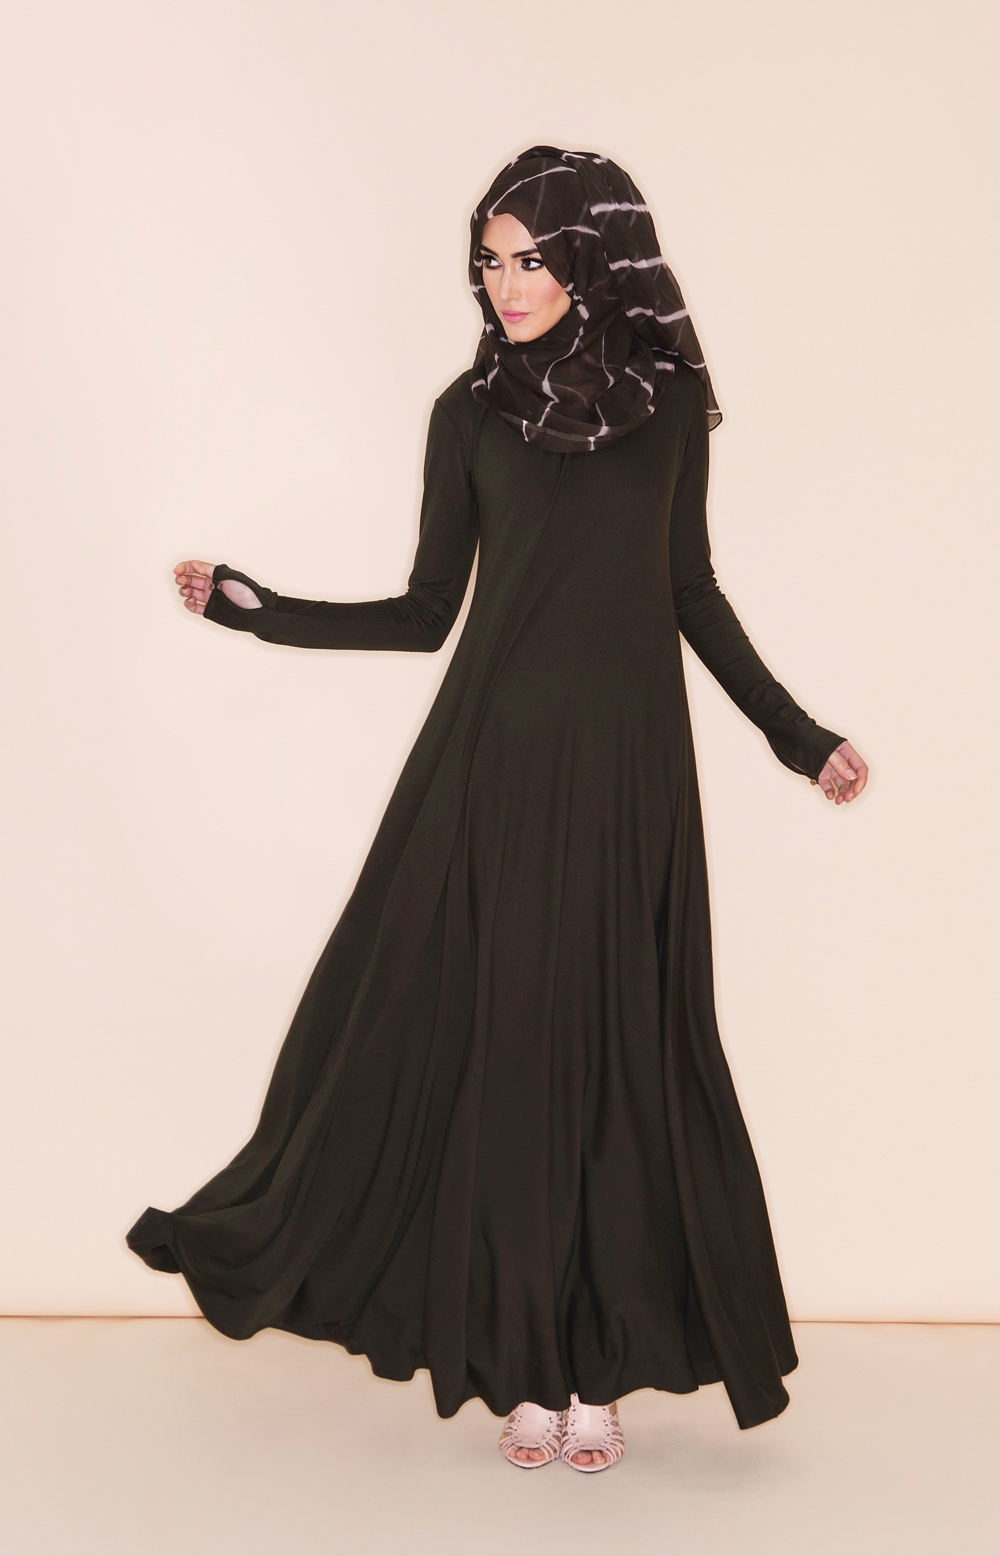 10+ Contoh Model Baju Muslim Terbaru 2018